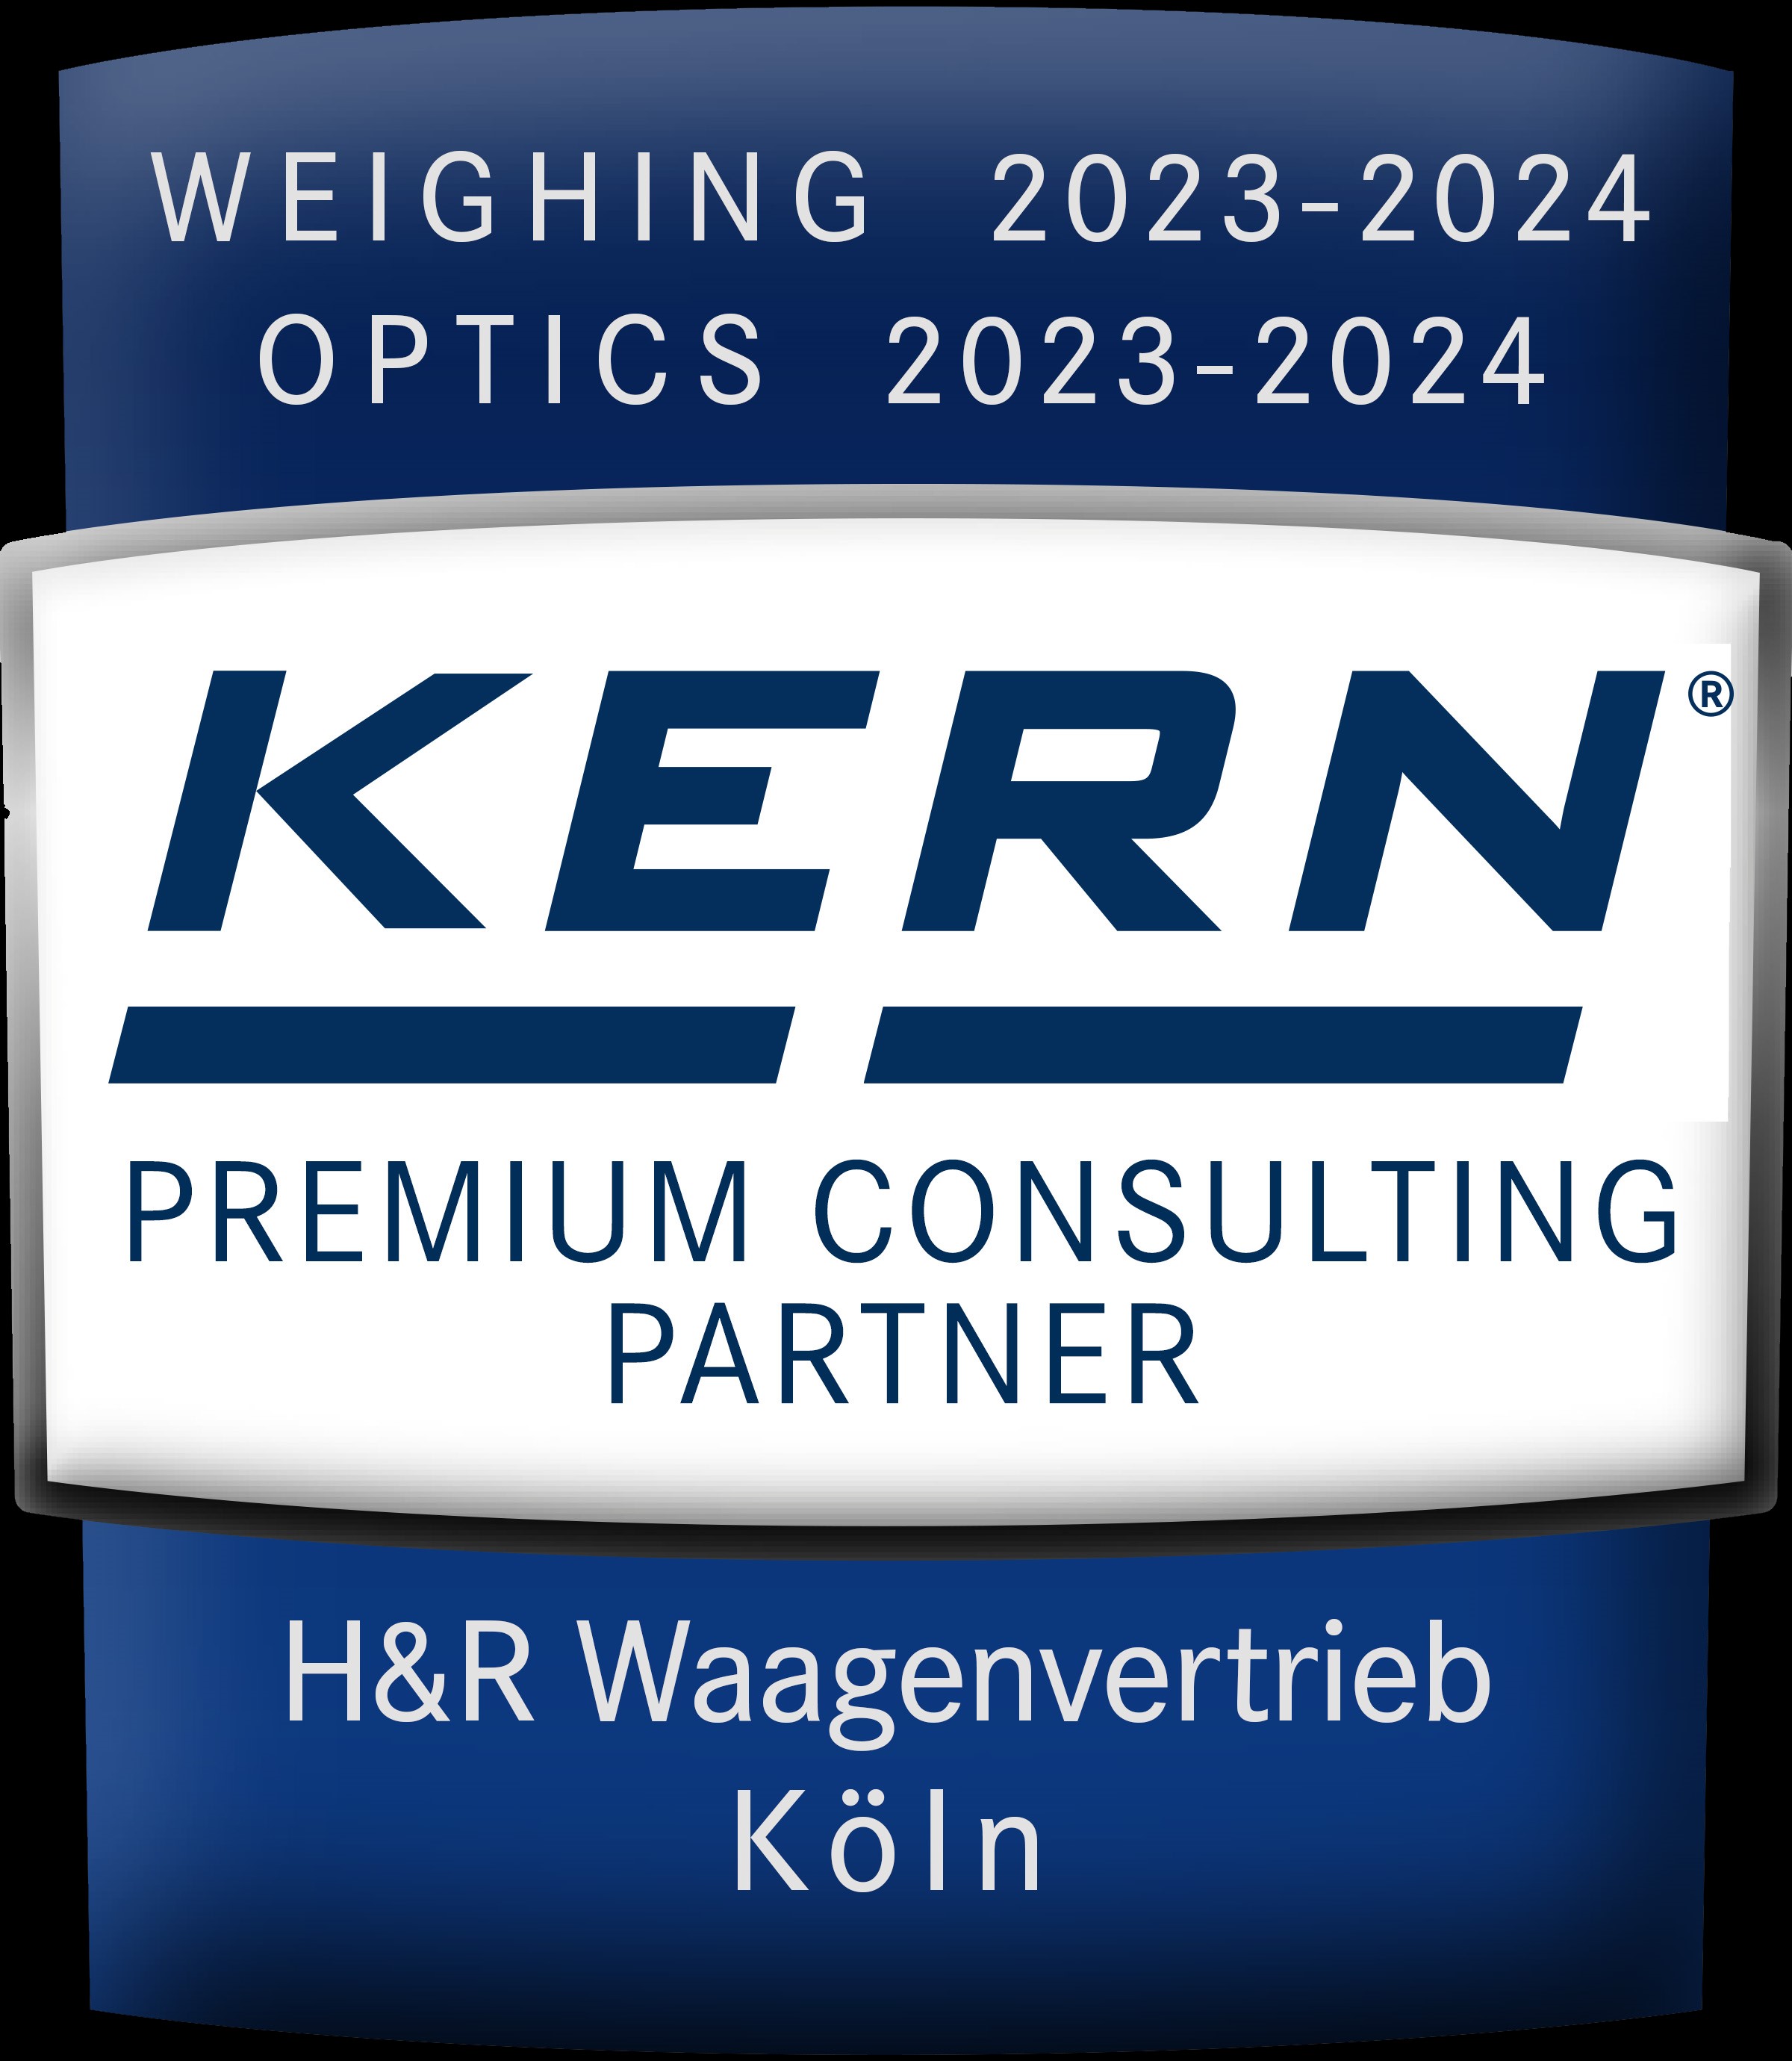 Kern Premium Consulting Partner